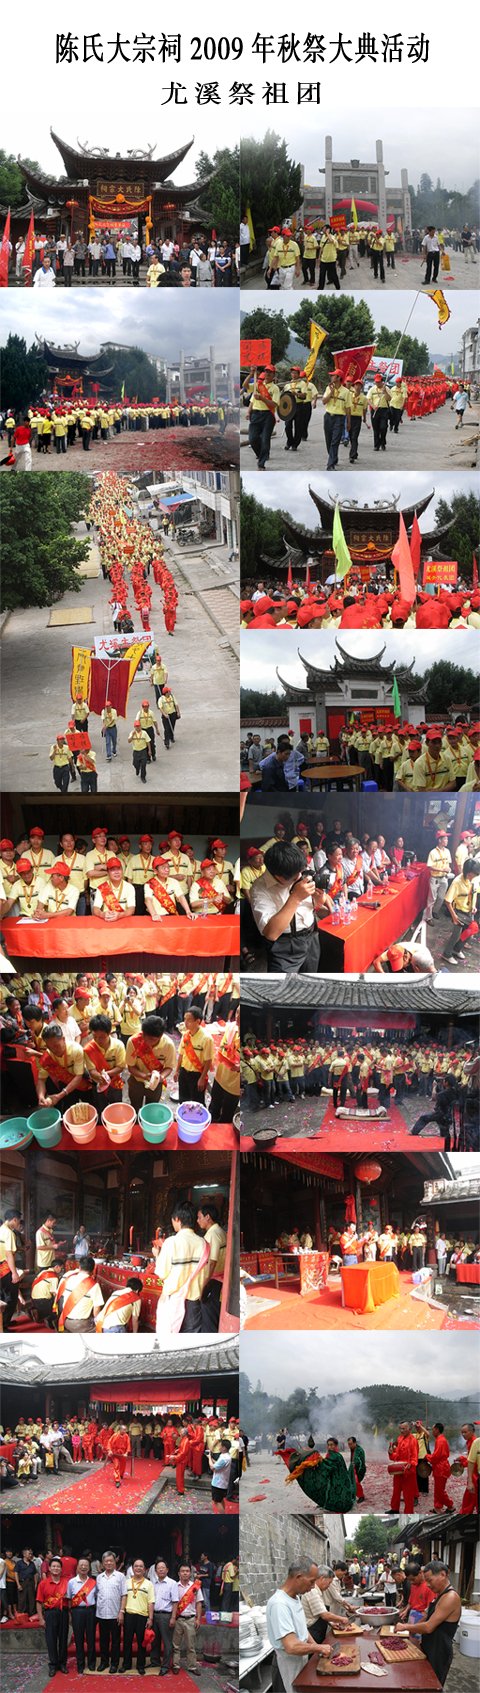 陈氏大宗祠2009年秋祭大典活动